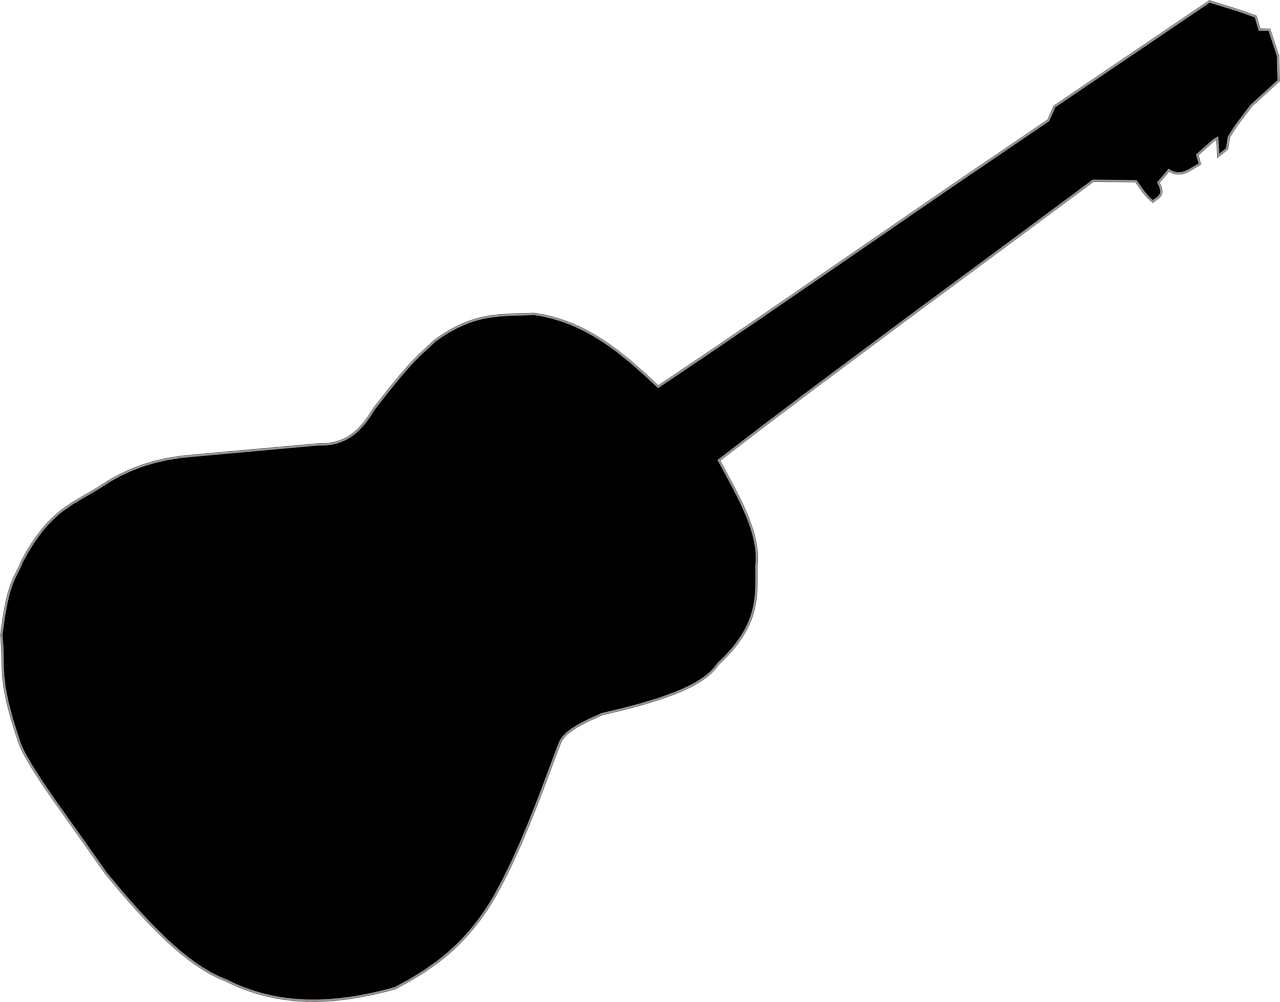 Clipart guitar vector. Imagen gratis en pixabay